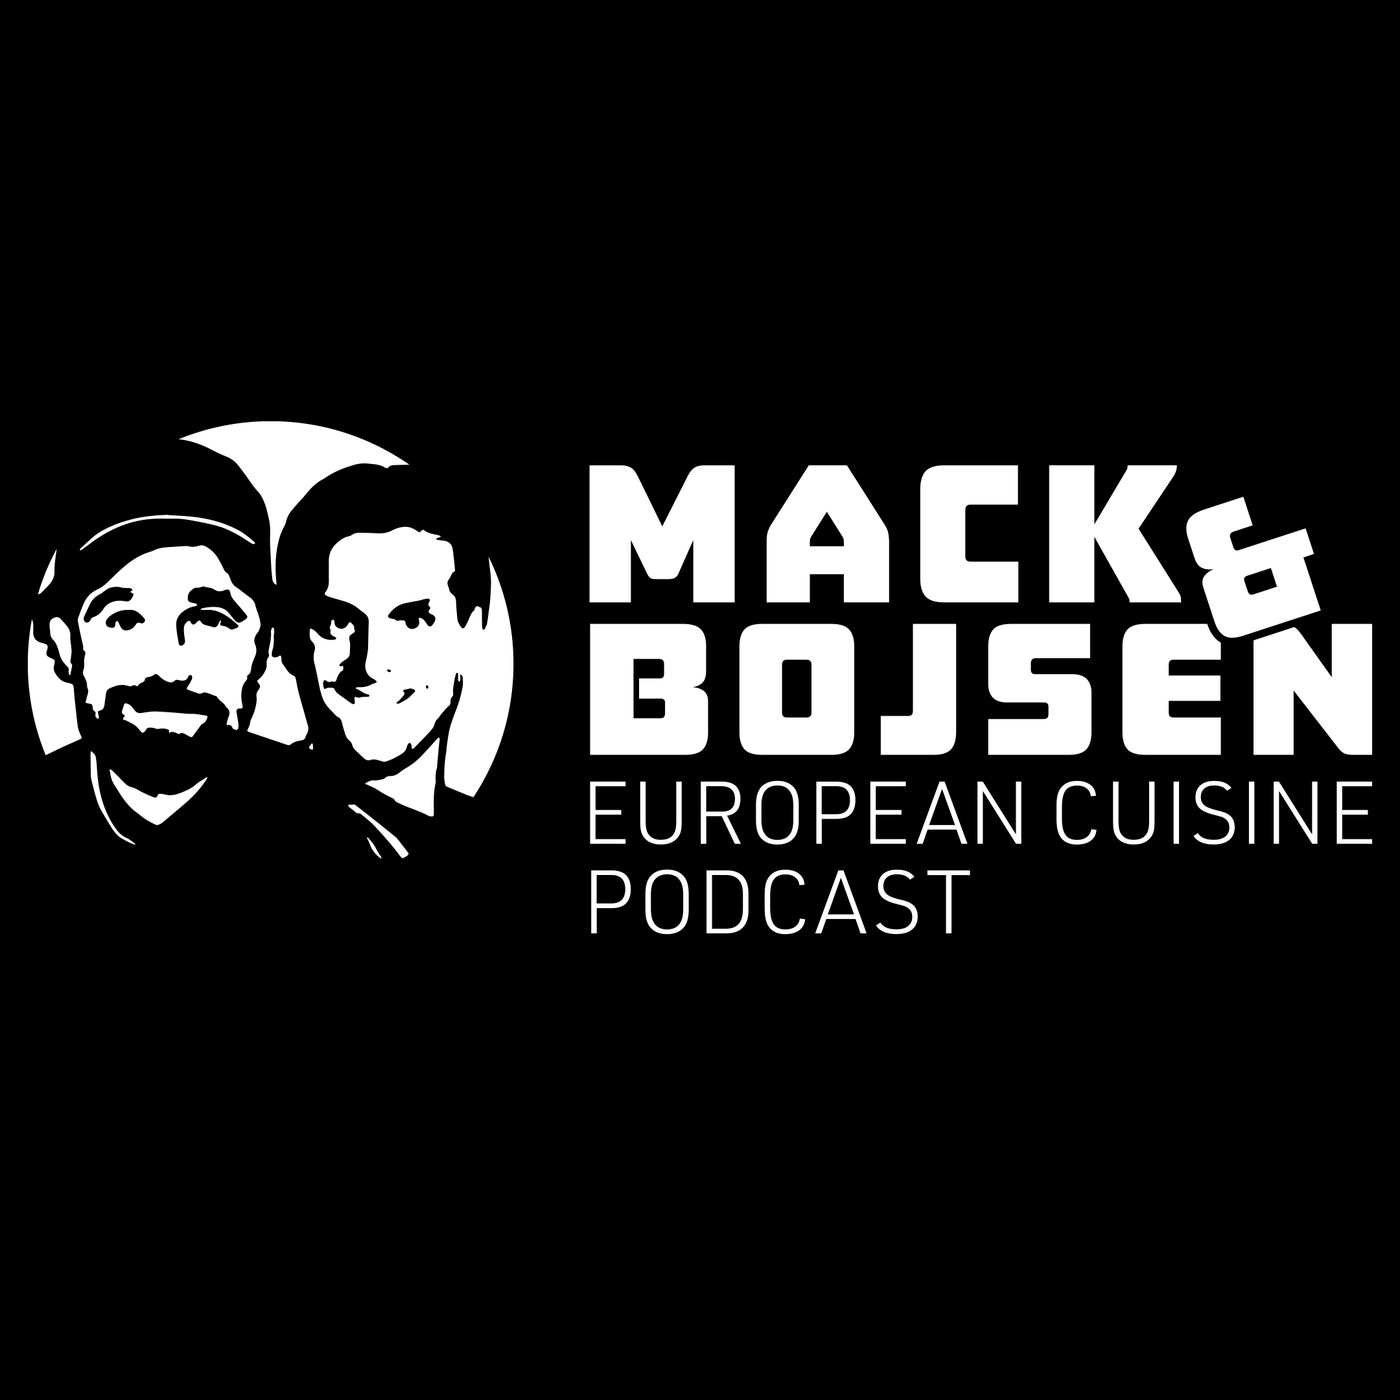 Der Geschmack Skandinaviens: Mack & Bojsen und die arktische Küche Lapplands - Teil 1